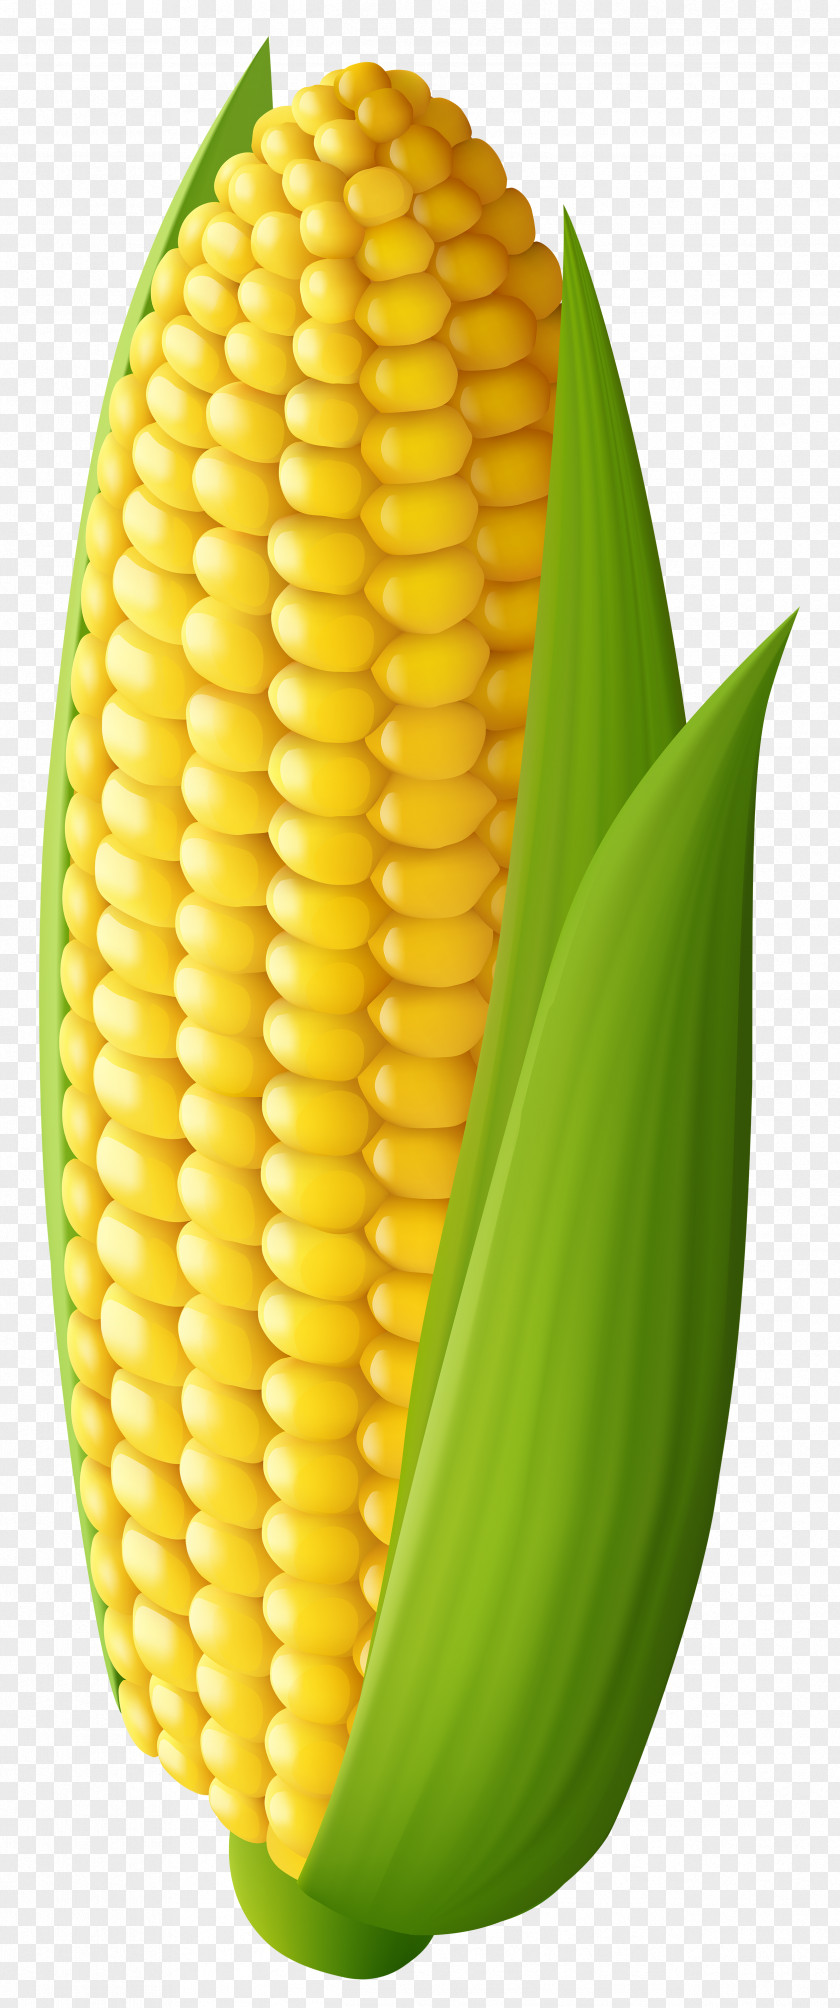 Corn Transparent Clip Art Image On The Cob Maize PNG